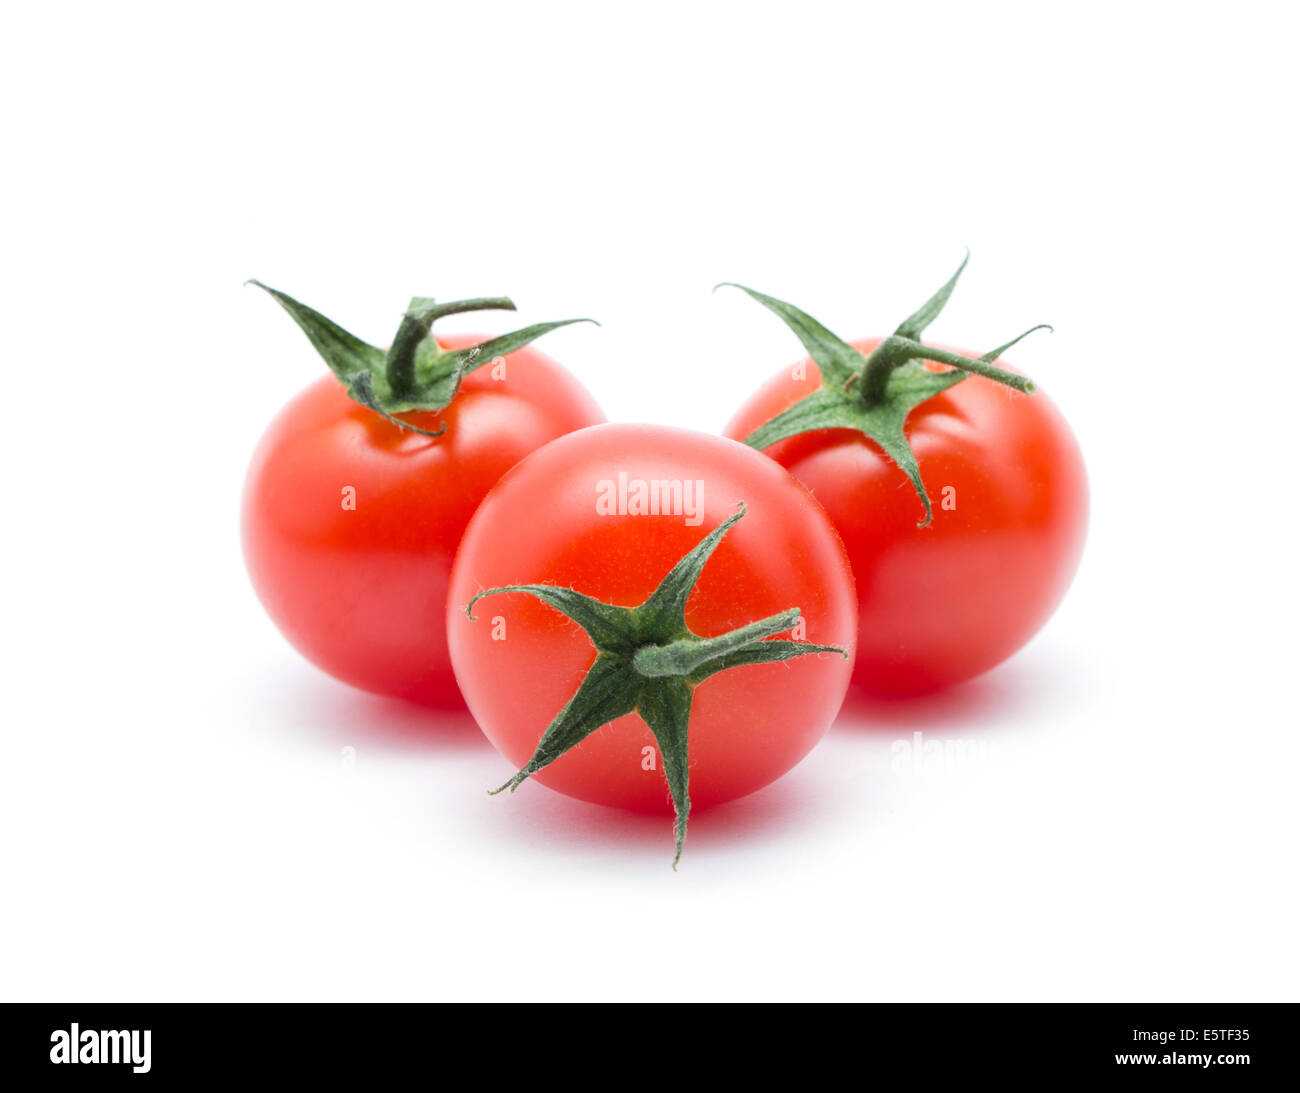 Cherry tomatoes on white Stock Photo